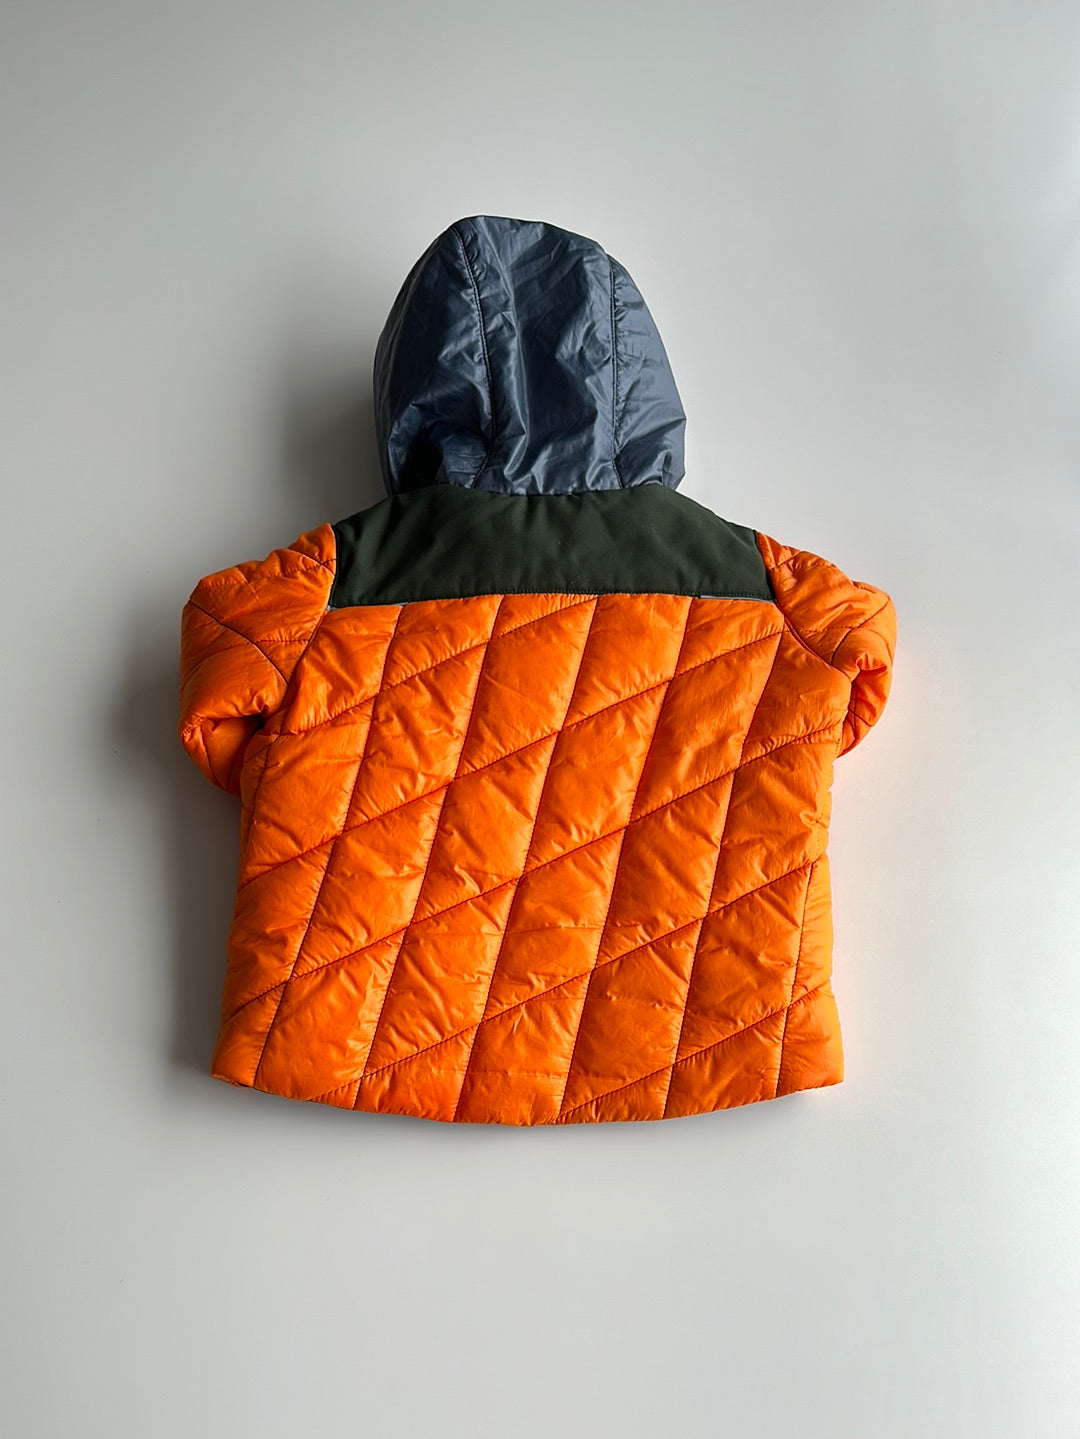 Obermayer - Winter coat - 2 years